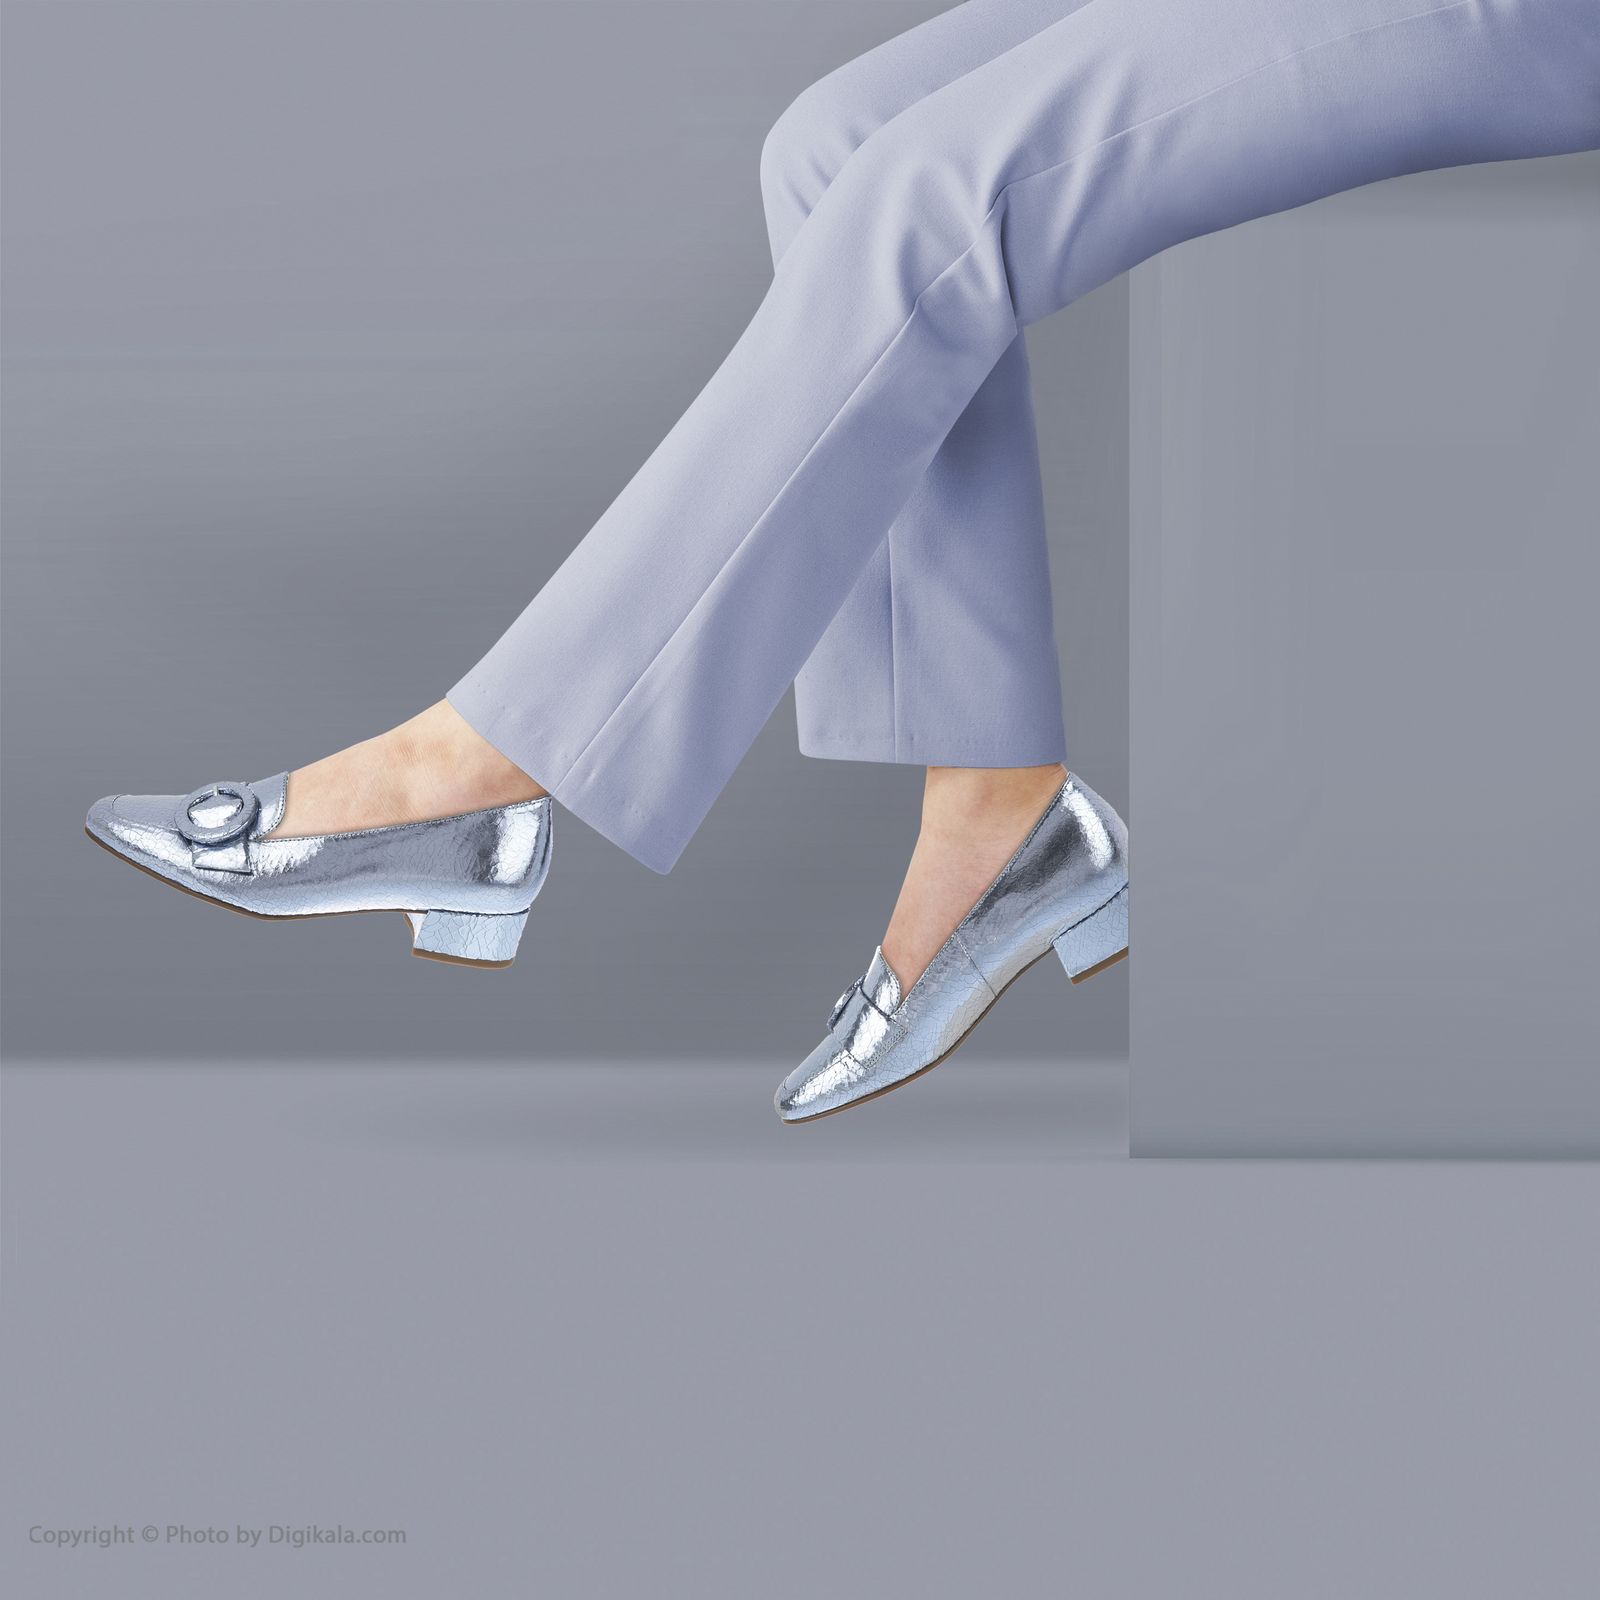 کفش روزمره زنانه هوگل مدل 5-103531-3200 - آبی - 2